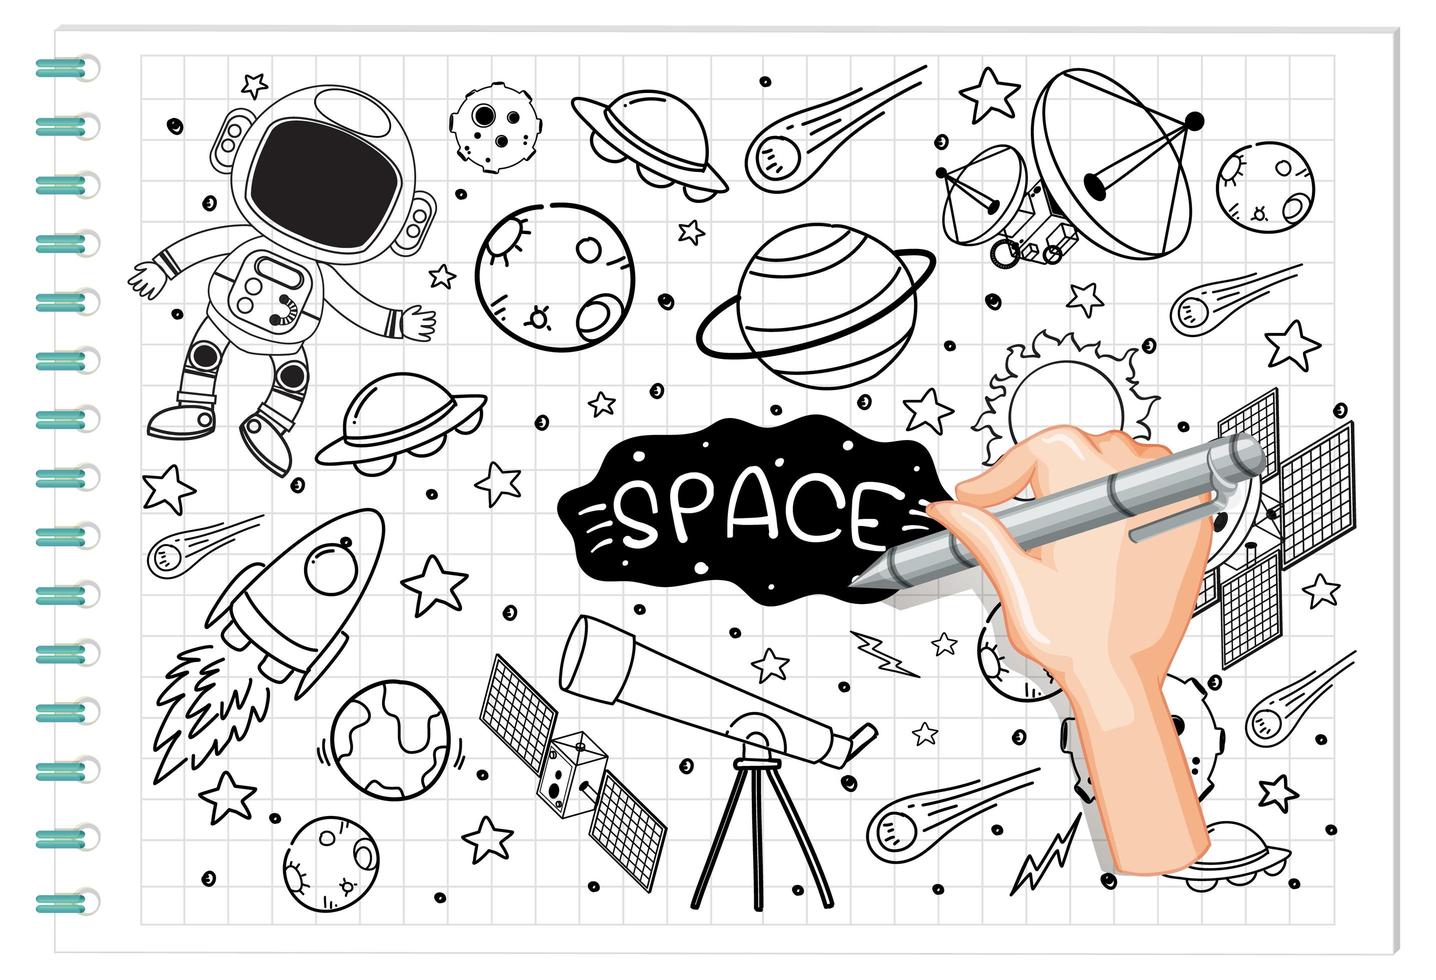 elemento de espacio de dibujo a mano en estilo doodle o boceto en papel vector